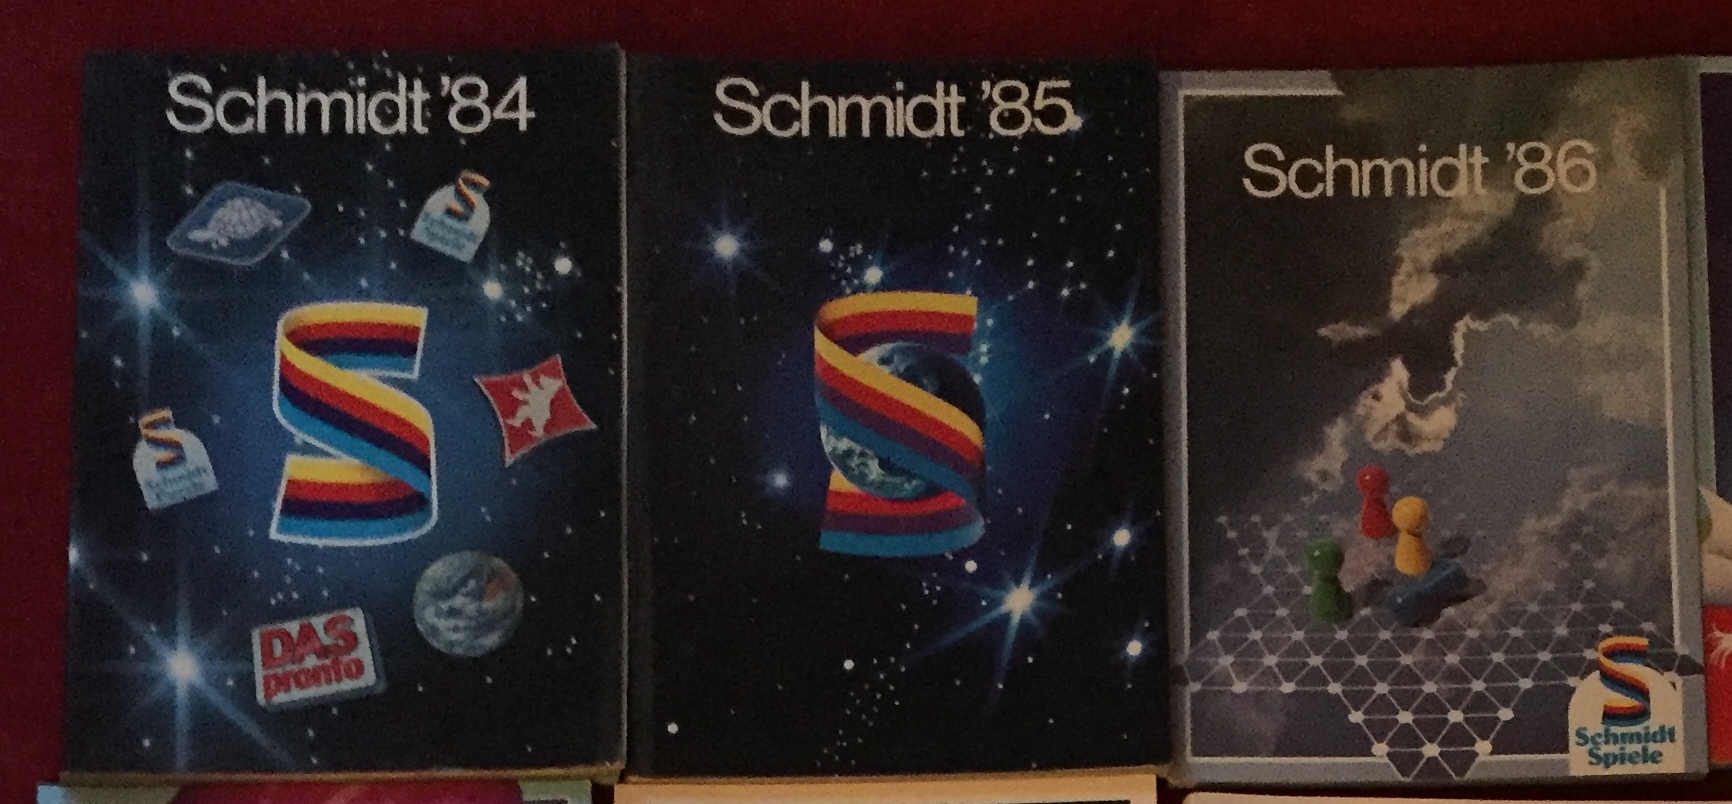 Schmidt Kataloge 83 84 85 86 91 96.jpg